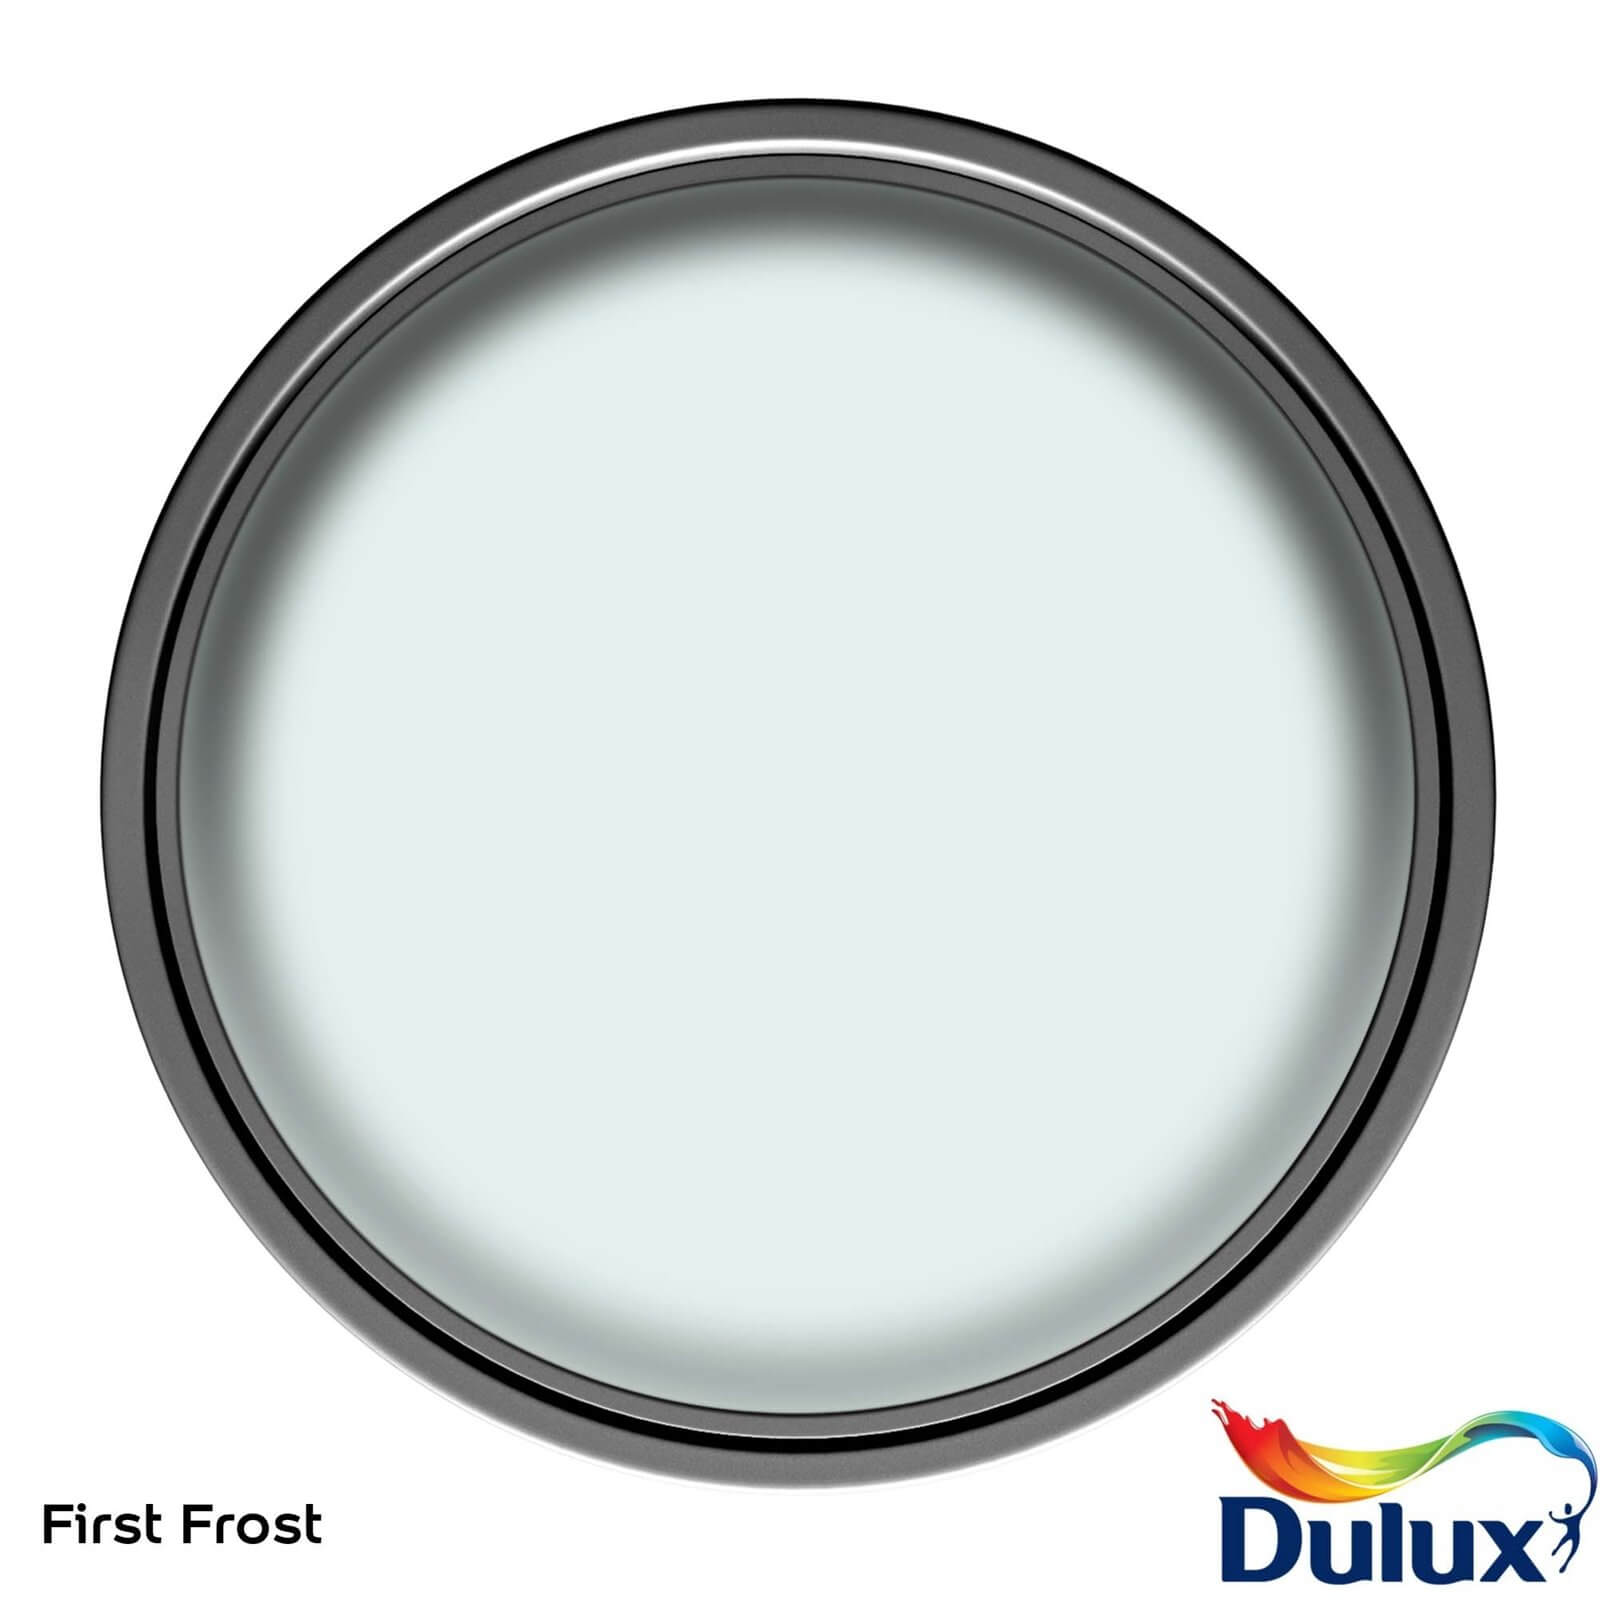 Dulux Light & Space Matt Emulsion Paint First Frost - 2.5L